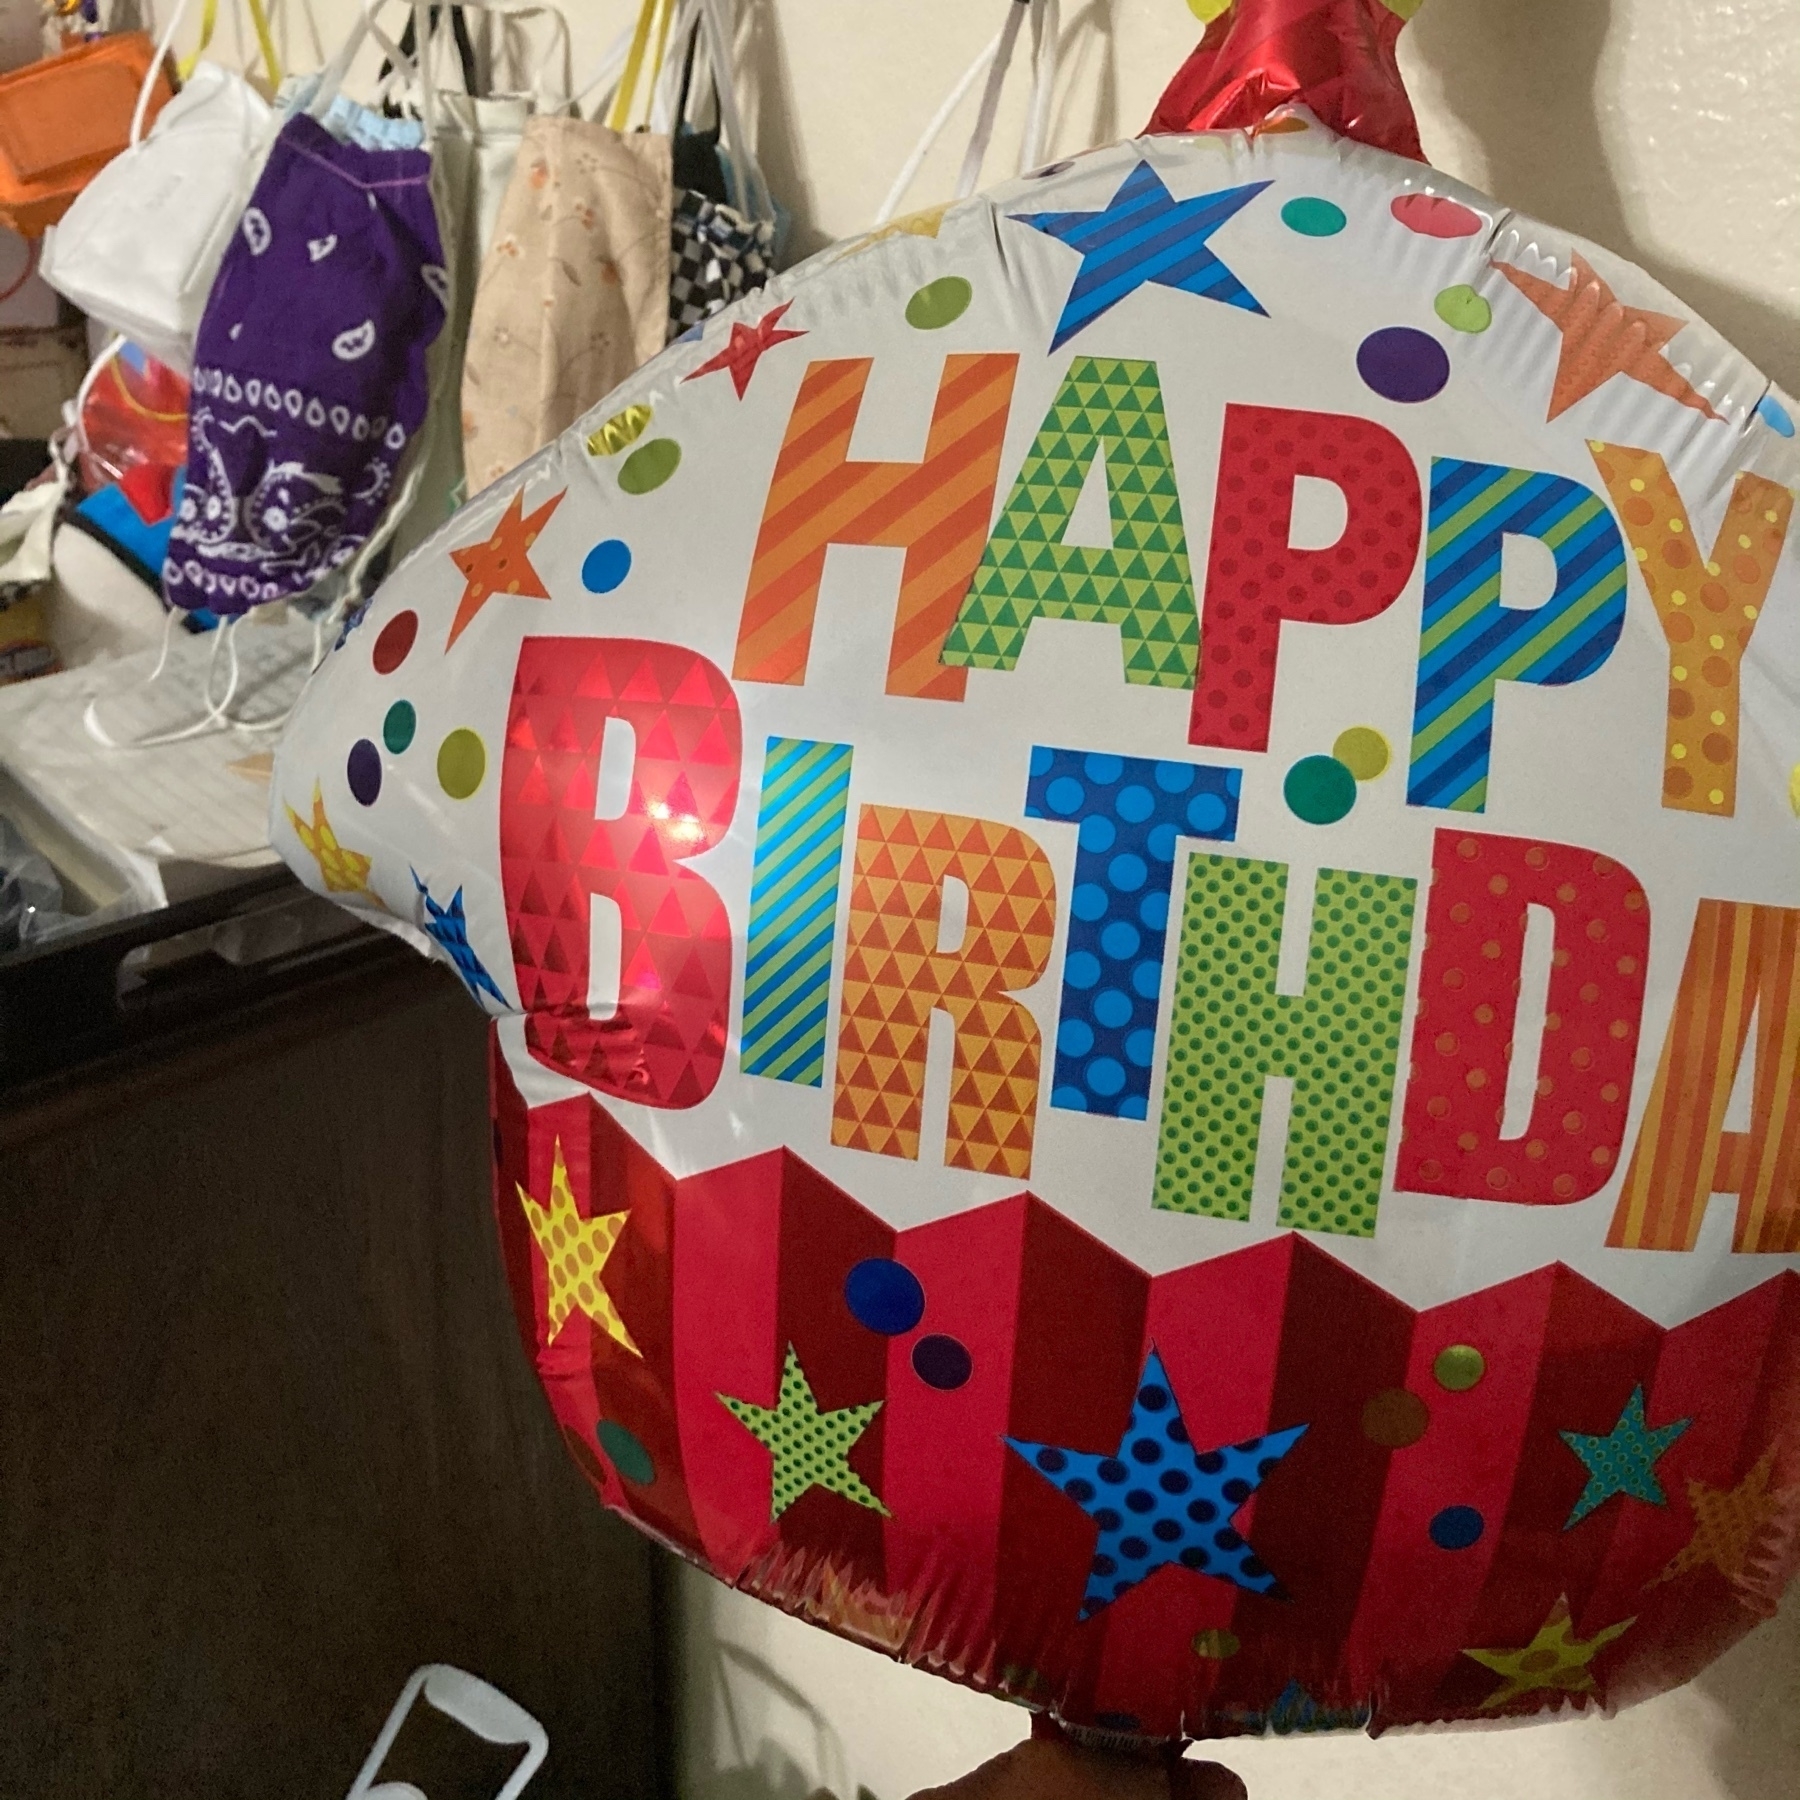 Birthday ballon next to masks. 